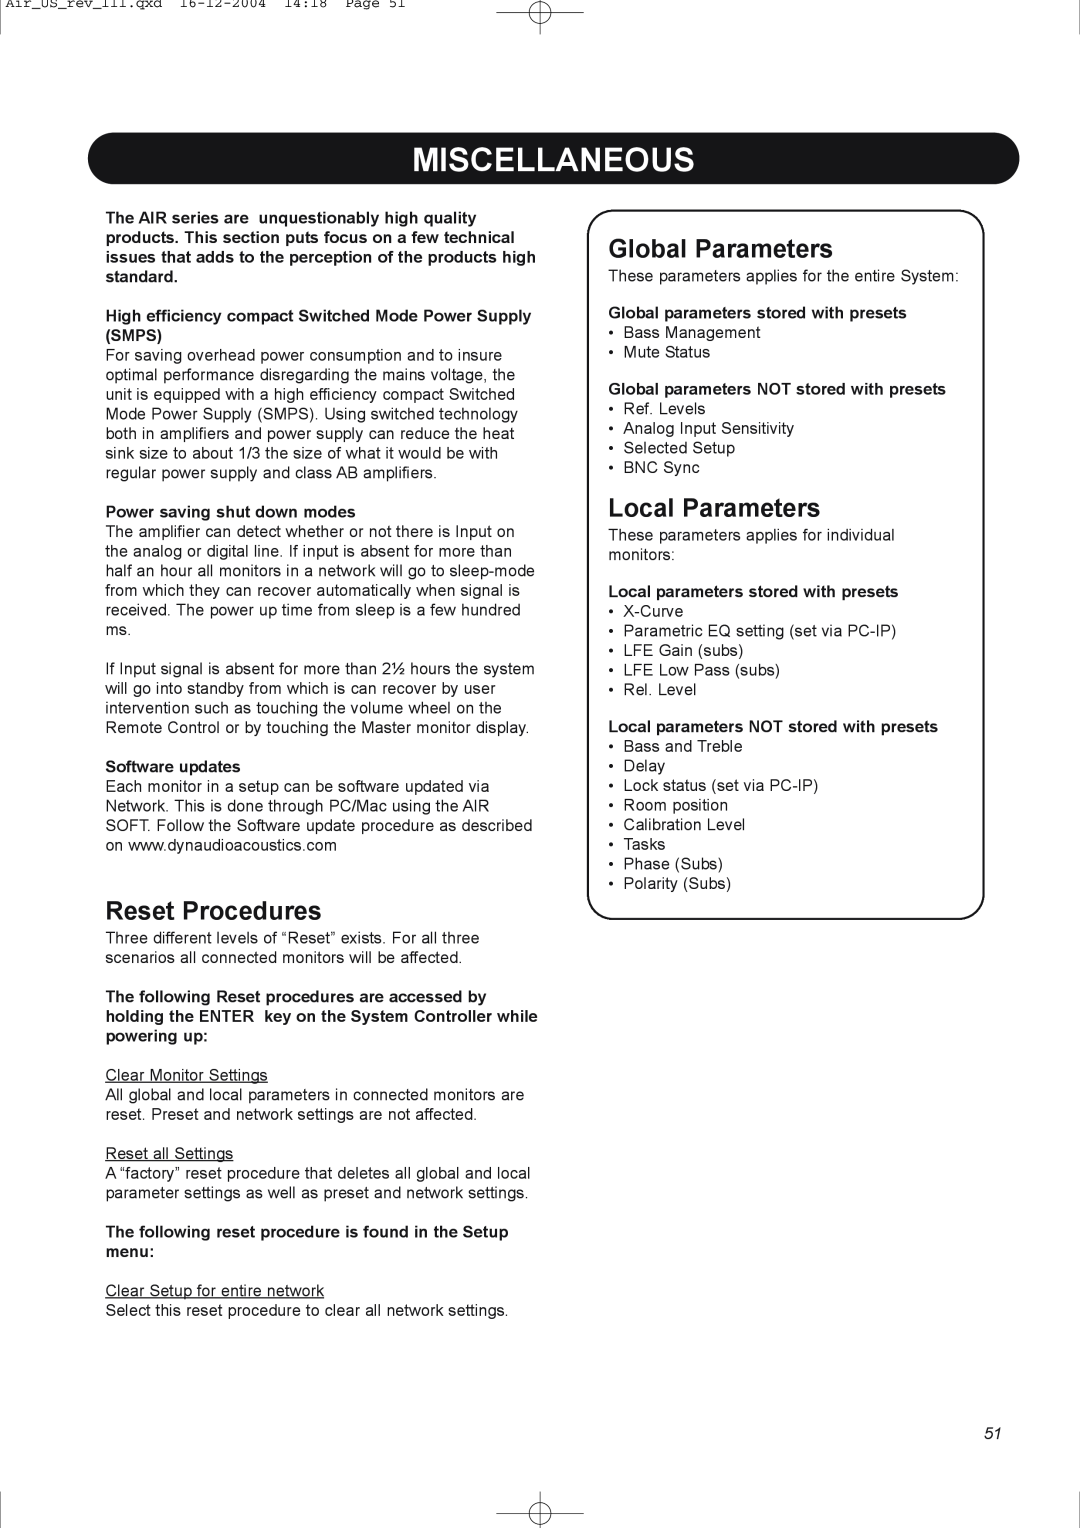 Dynaudio pmn manual Miscellaneous, Reset Procedures, Global Parameters, Local Parameters 